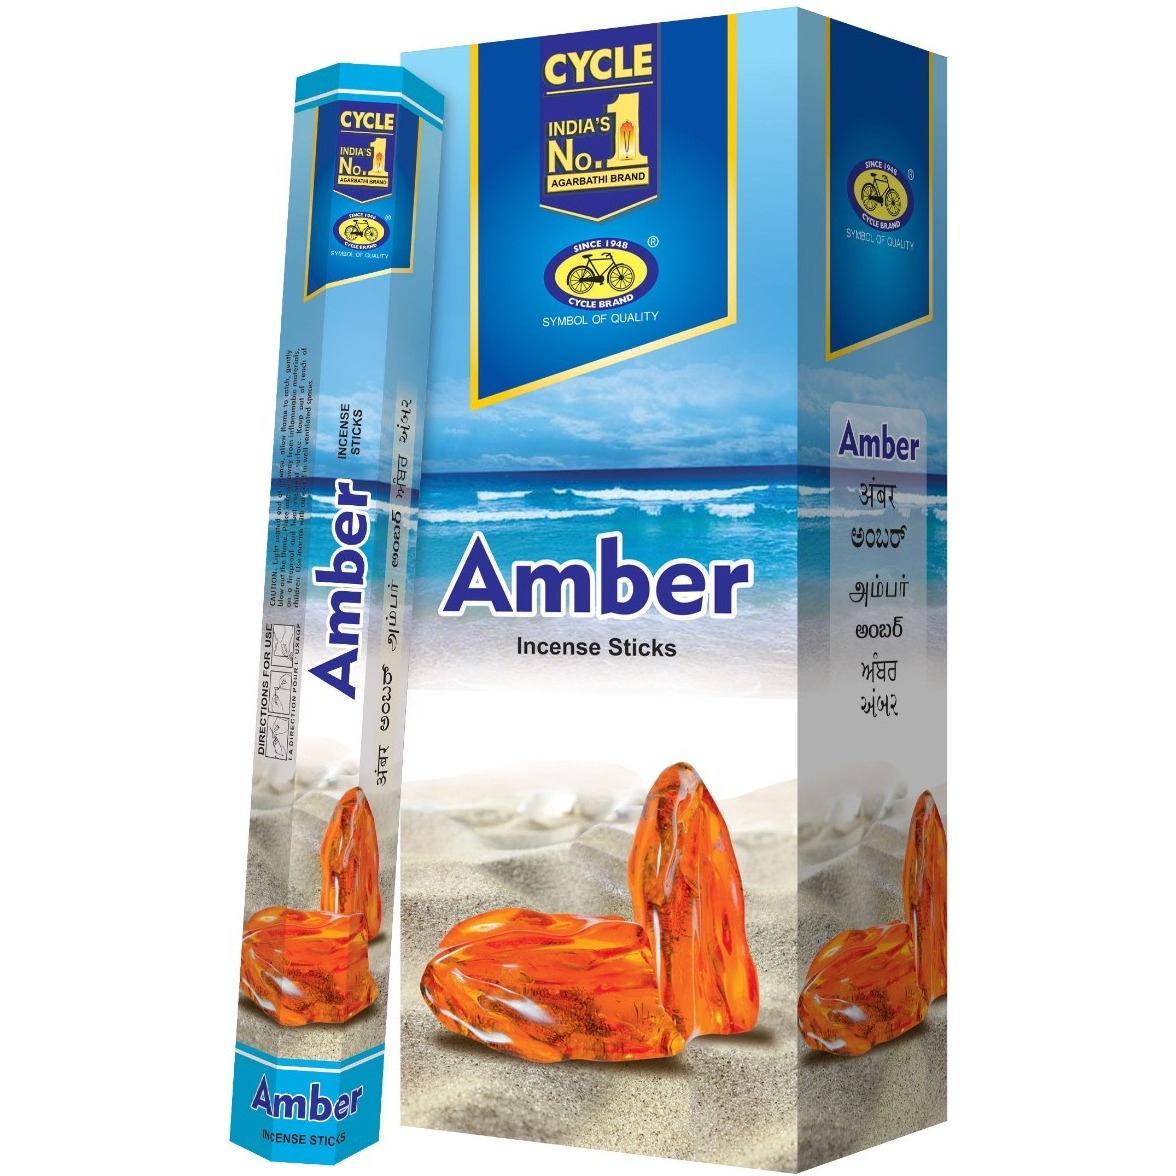 Case of 12 - Cycle No 1 Amber Agarbatti Incense Sticks - 120 Pc